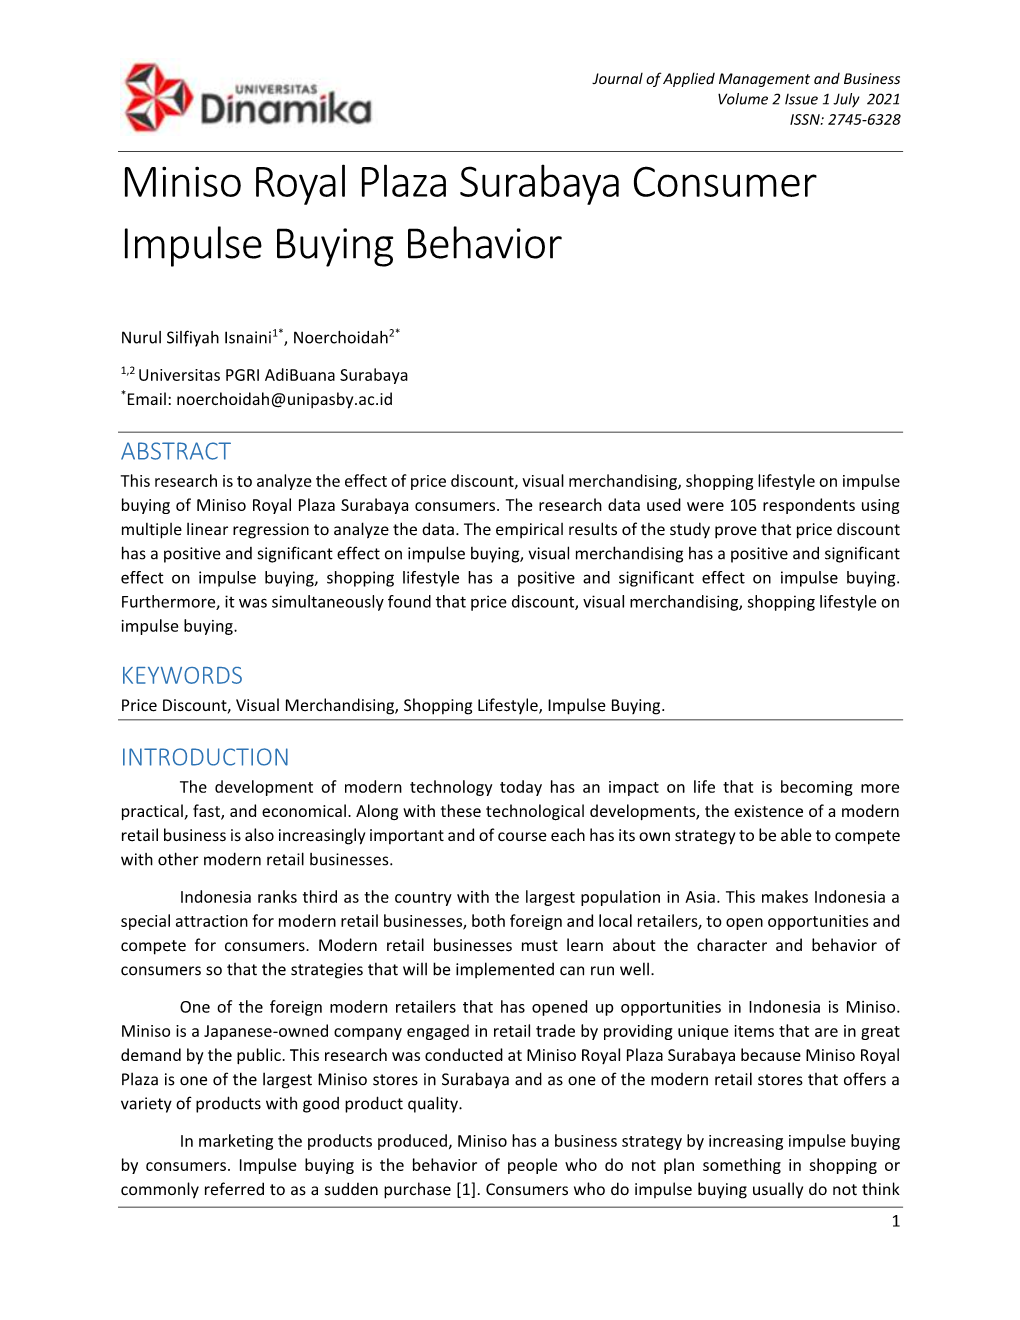 Miniso Royal Plaza Surabaya Consumer Impulse Buying Behavior